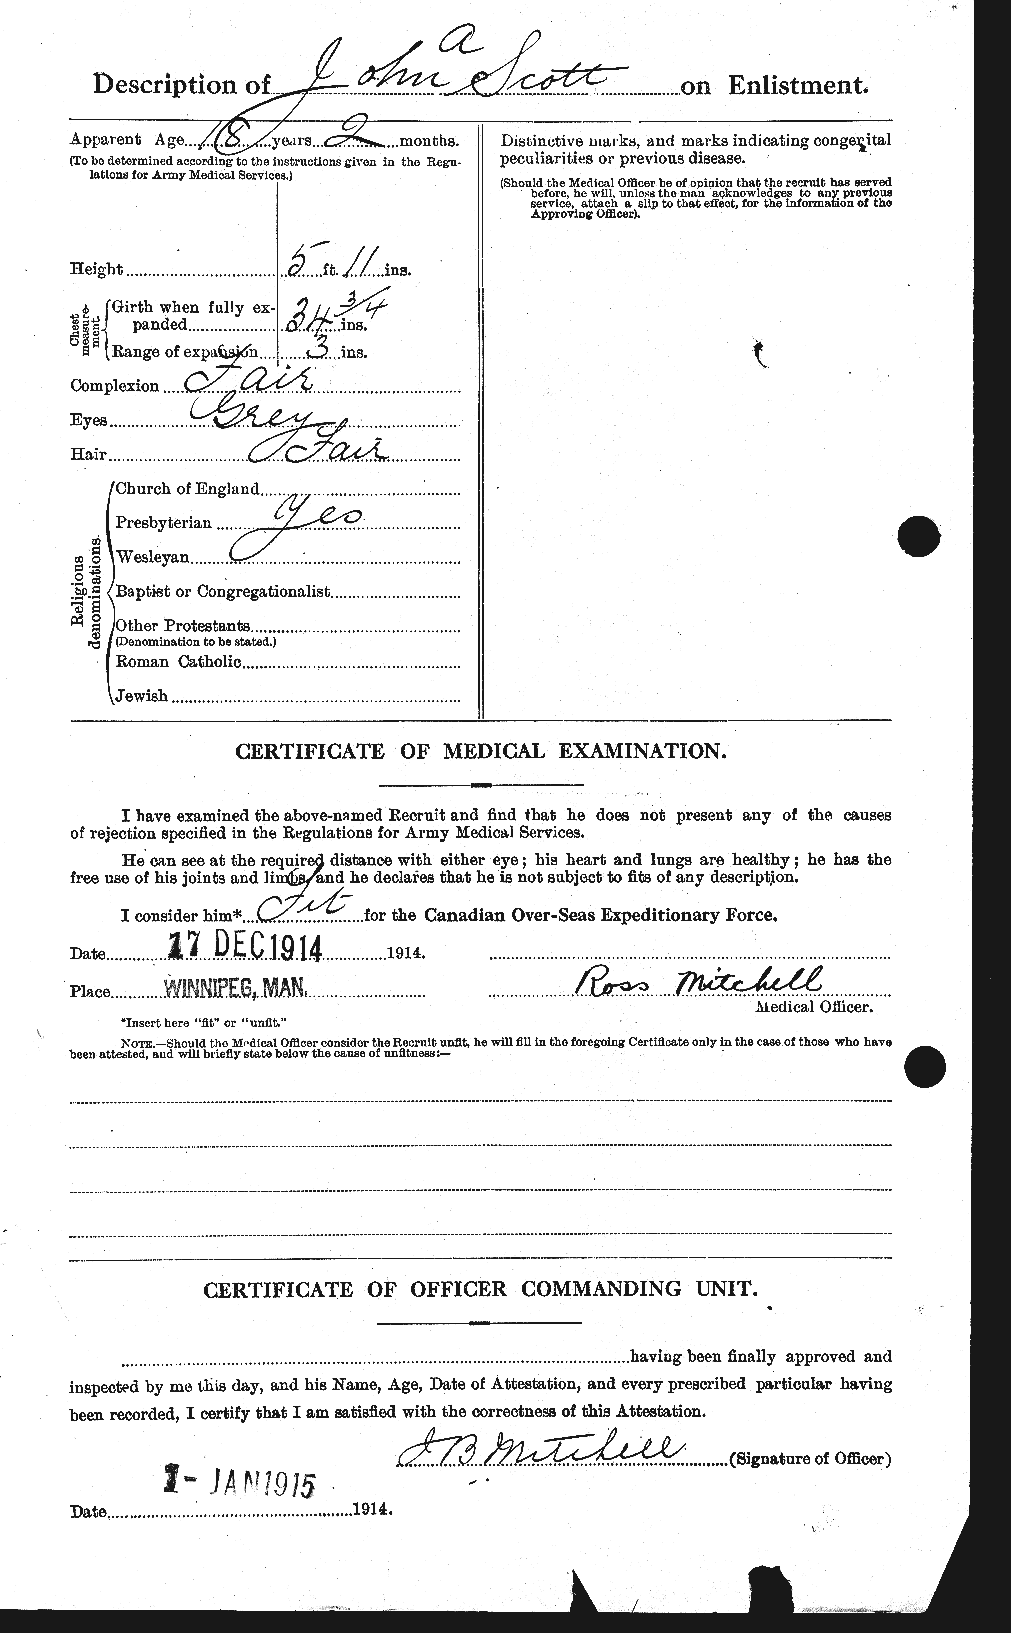 Dossiers du Personnel de la Première Guerre mondiale - CEC 084663b